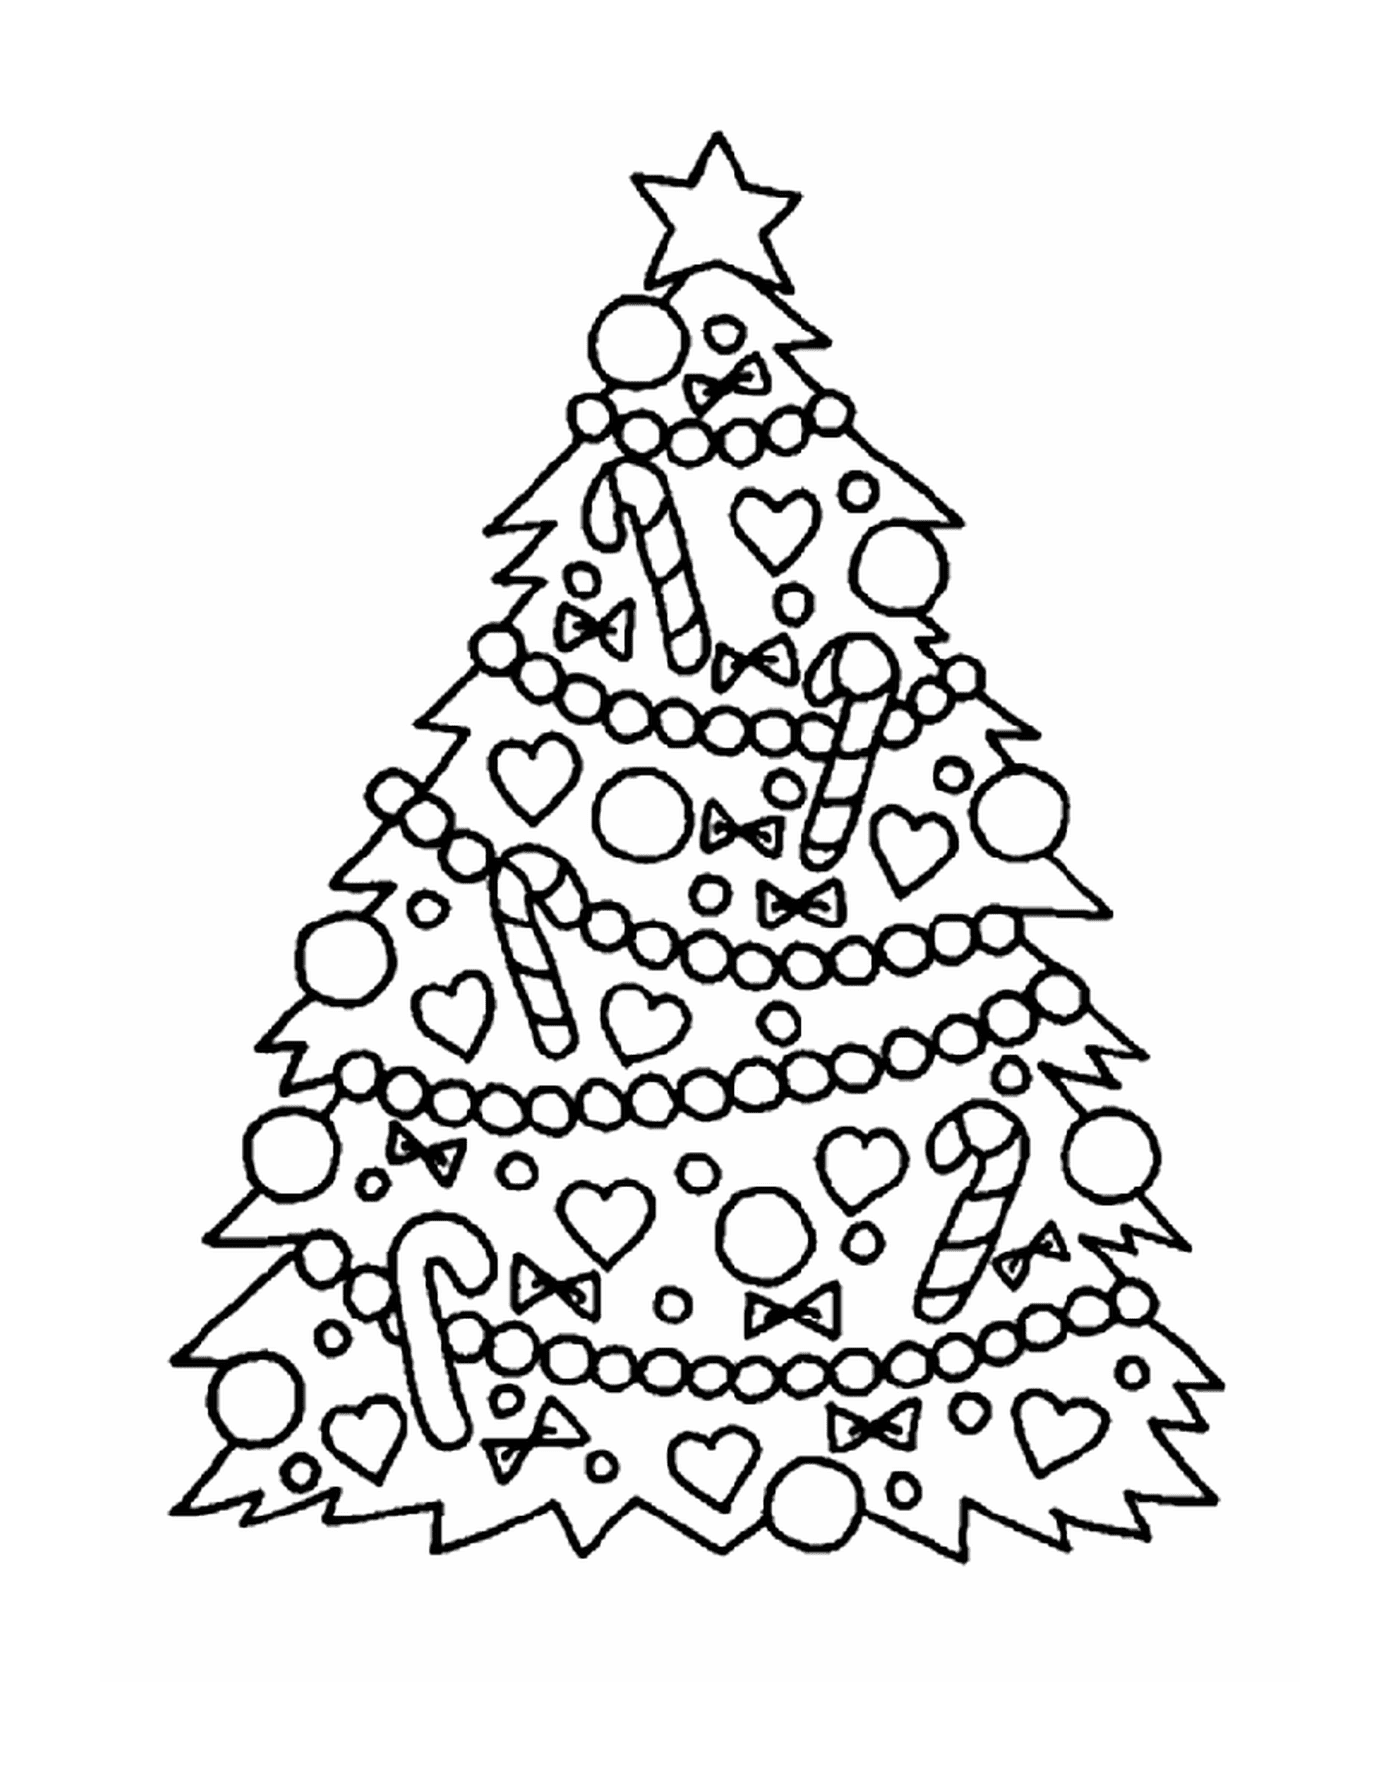  圣诞树,装饰着糖果和心 